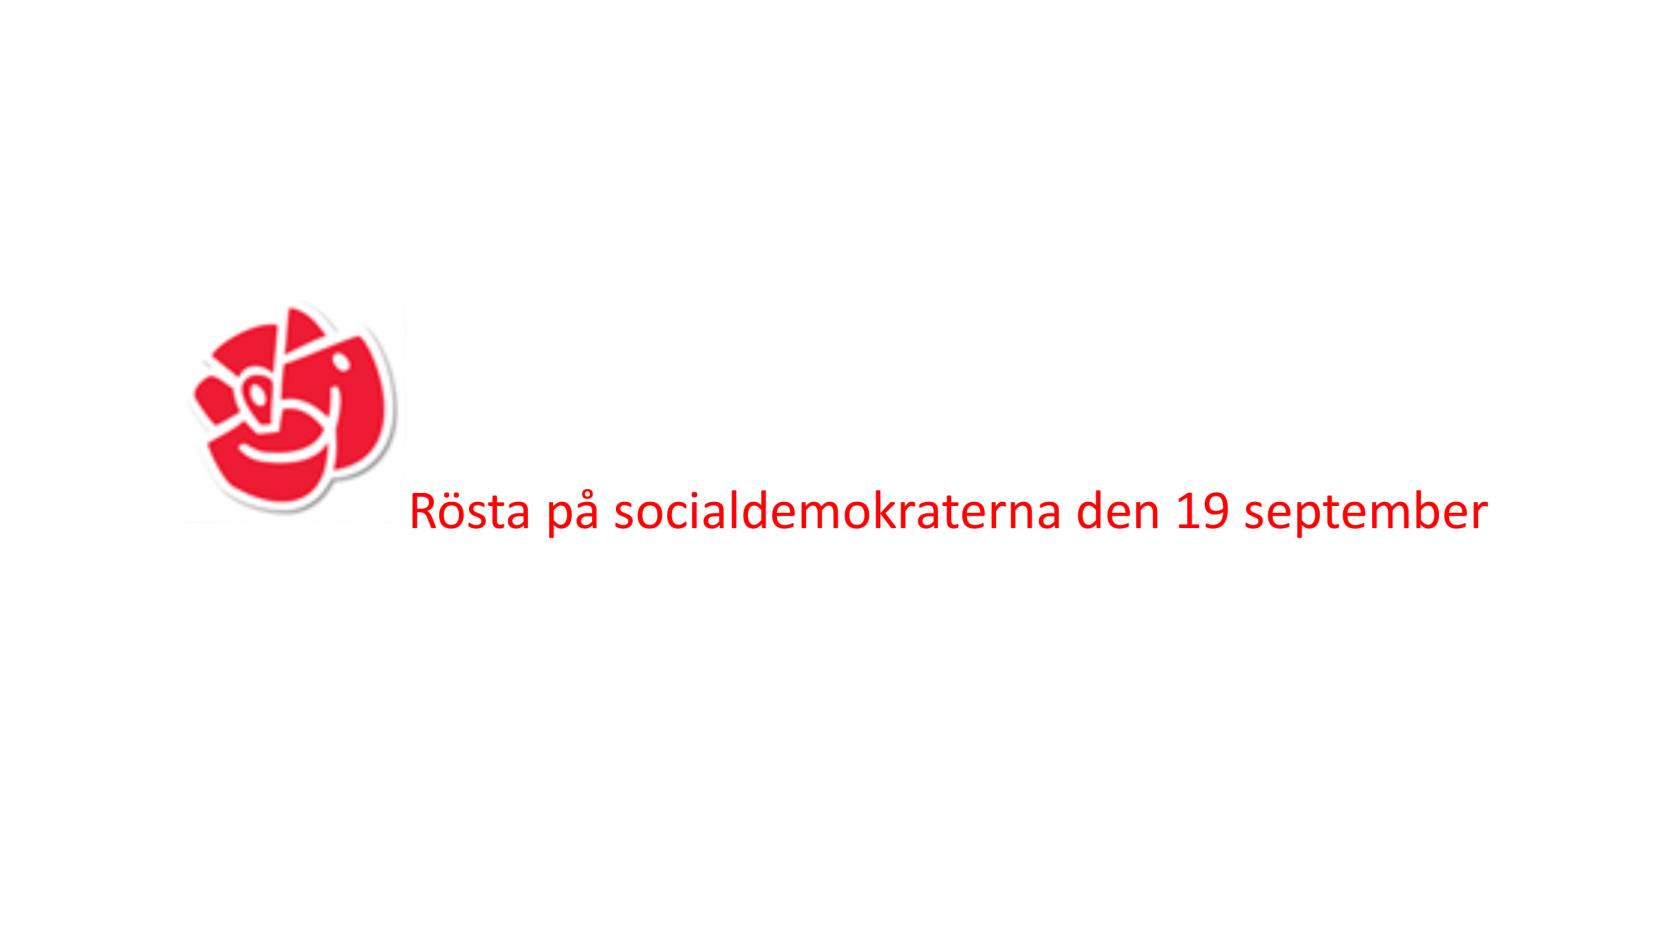 Socialdemokraternas logga och text att man ska rösta på dem